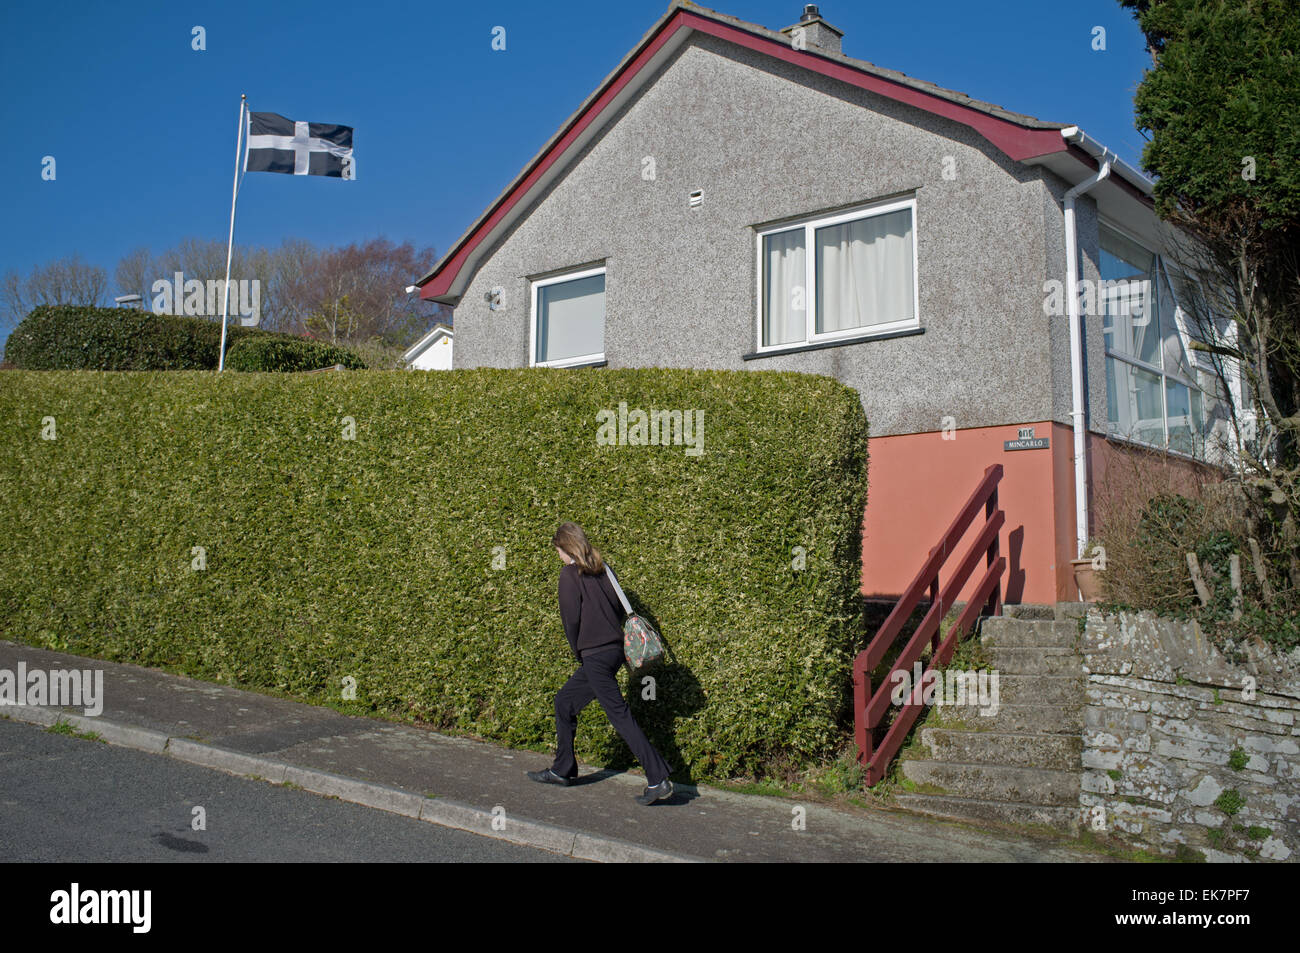 Un enfant passe devant une maison avec un drapeau cornish dans le jardin Banque D'Images